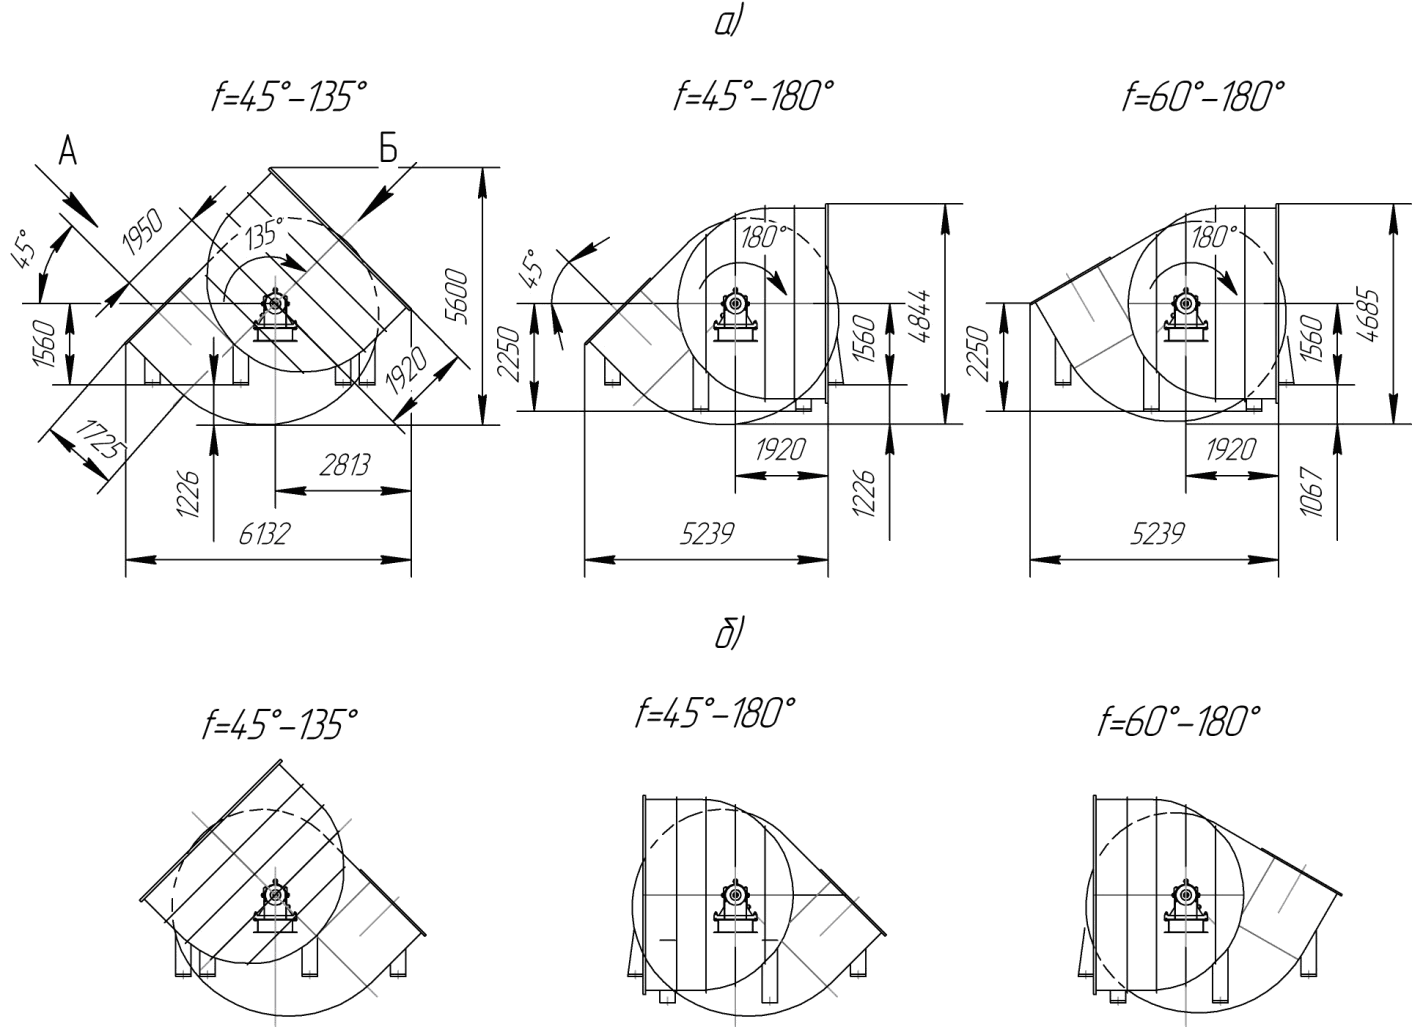 Схема разворота корпуса дымососа ДН26х2 (а – правого вращения, б – левого вращения)